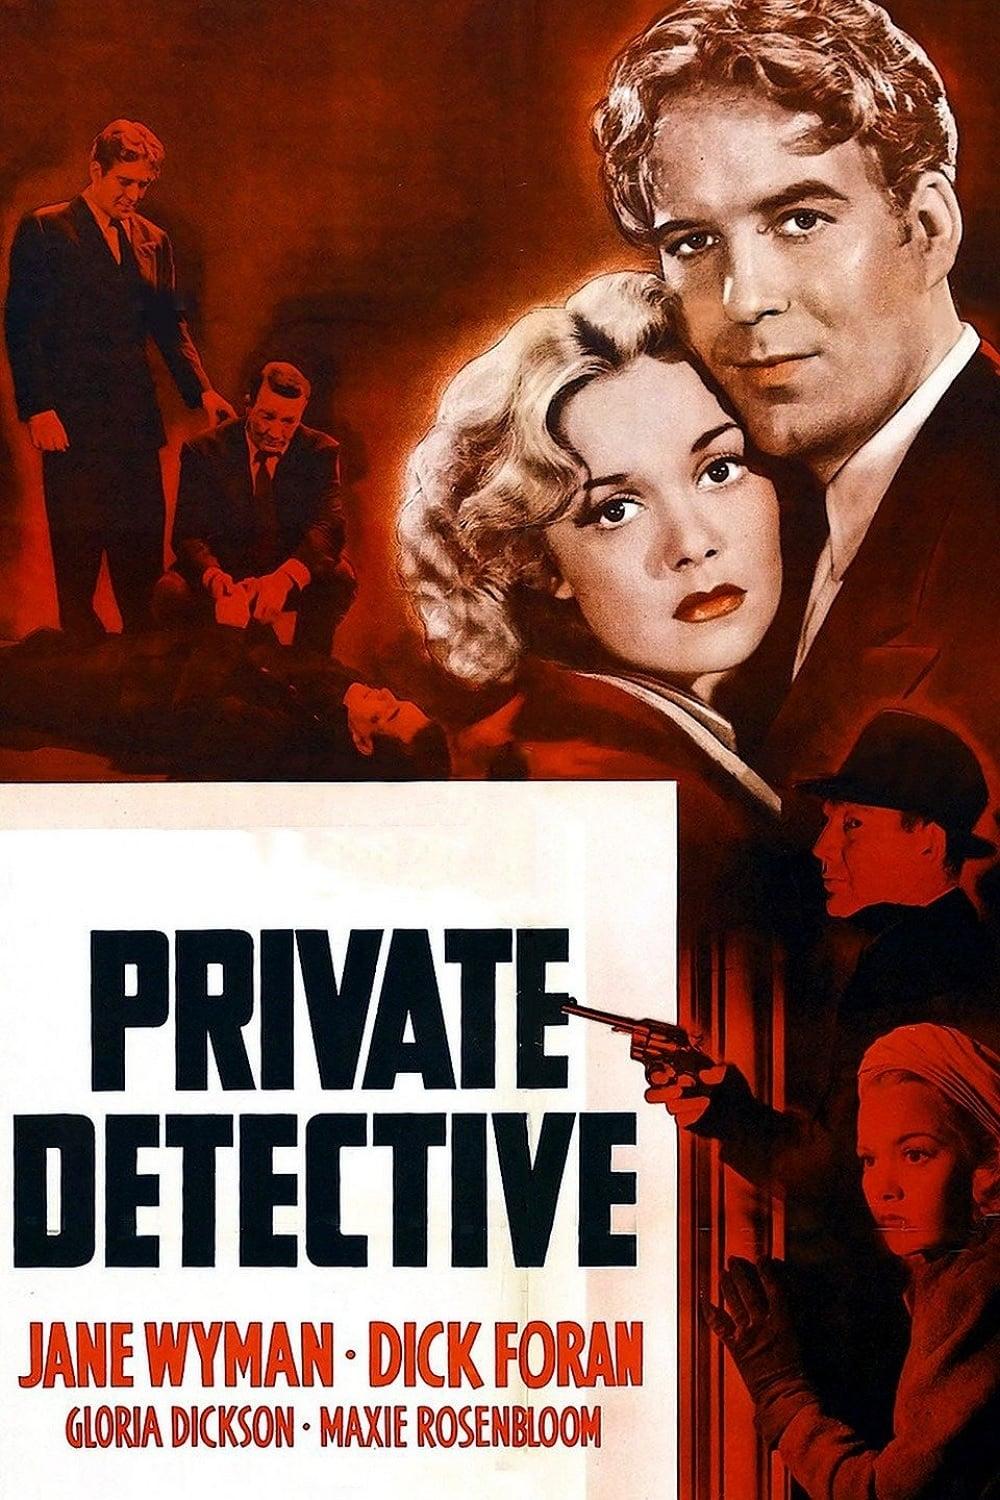 Private Detective poster